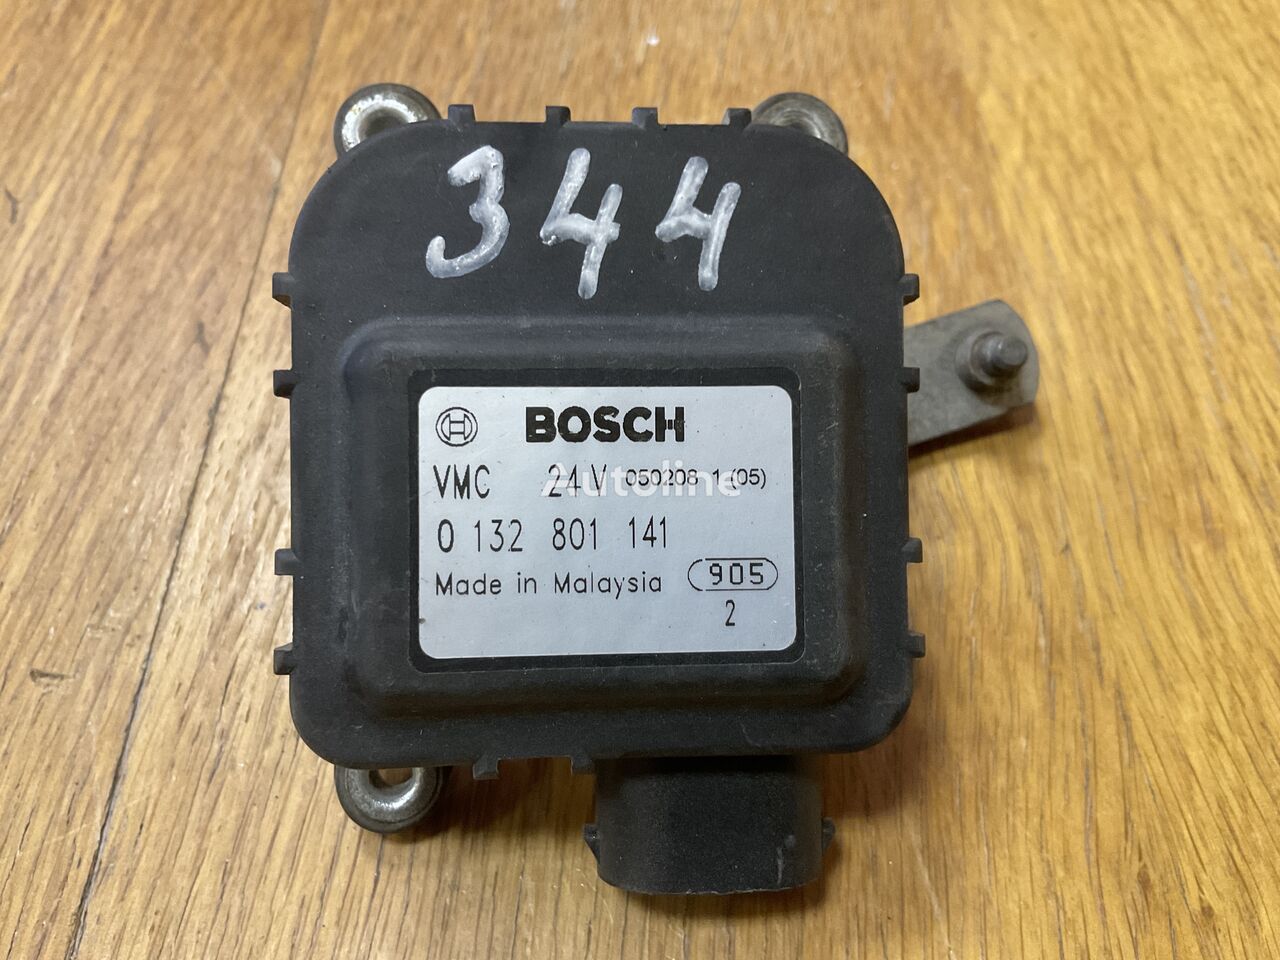 0132801141 Motorchik zaslonki otopitelya Bosch  Bosch VMC 24V 0132801141 pentru autobuz Setra